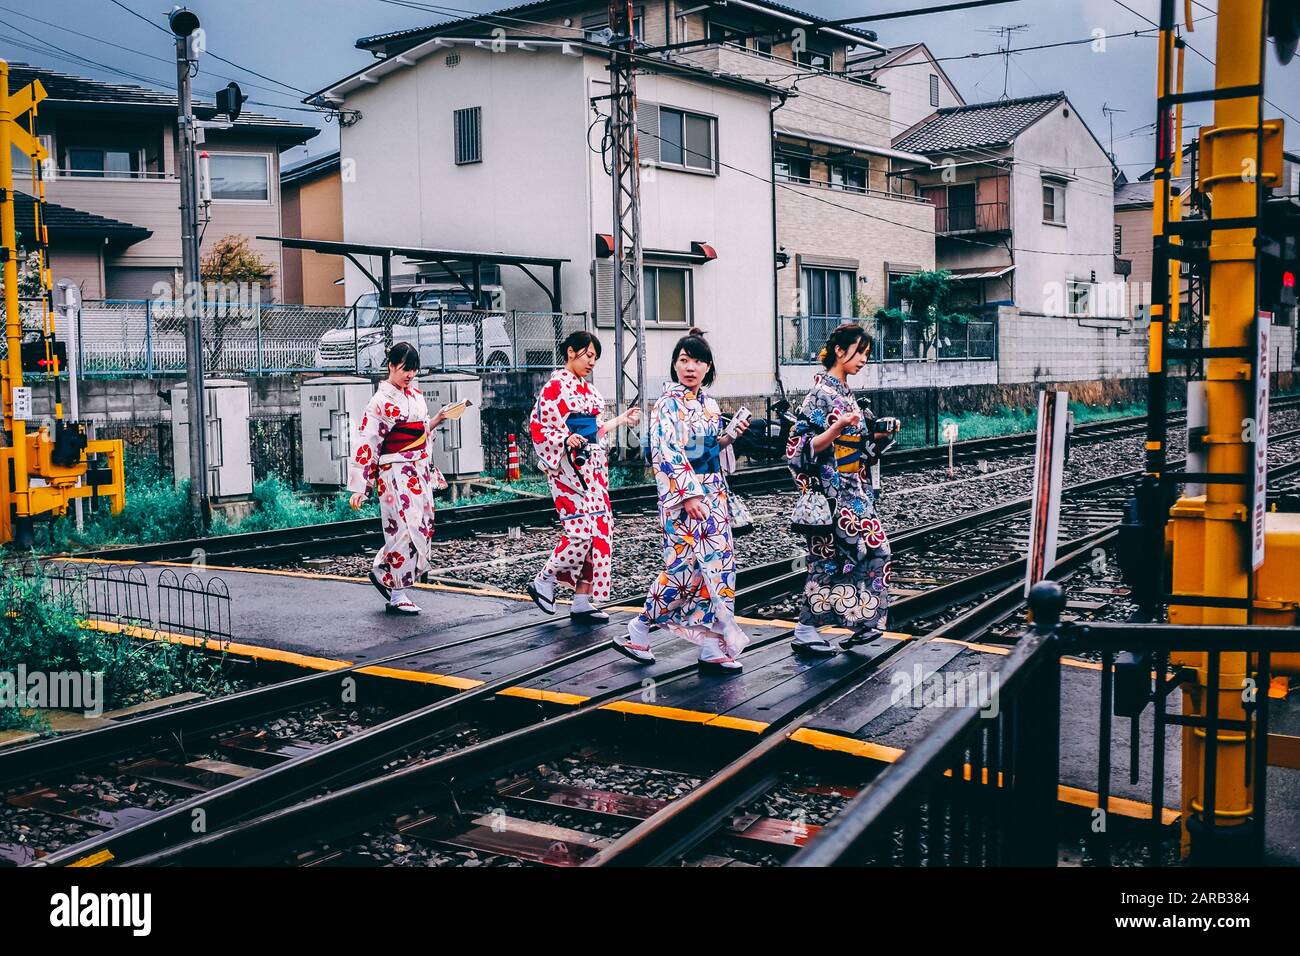 Escena de calle todos los días en Japón. Mujeres japonesas en Kimono tradicional Foto de stock